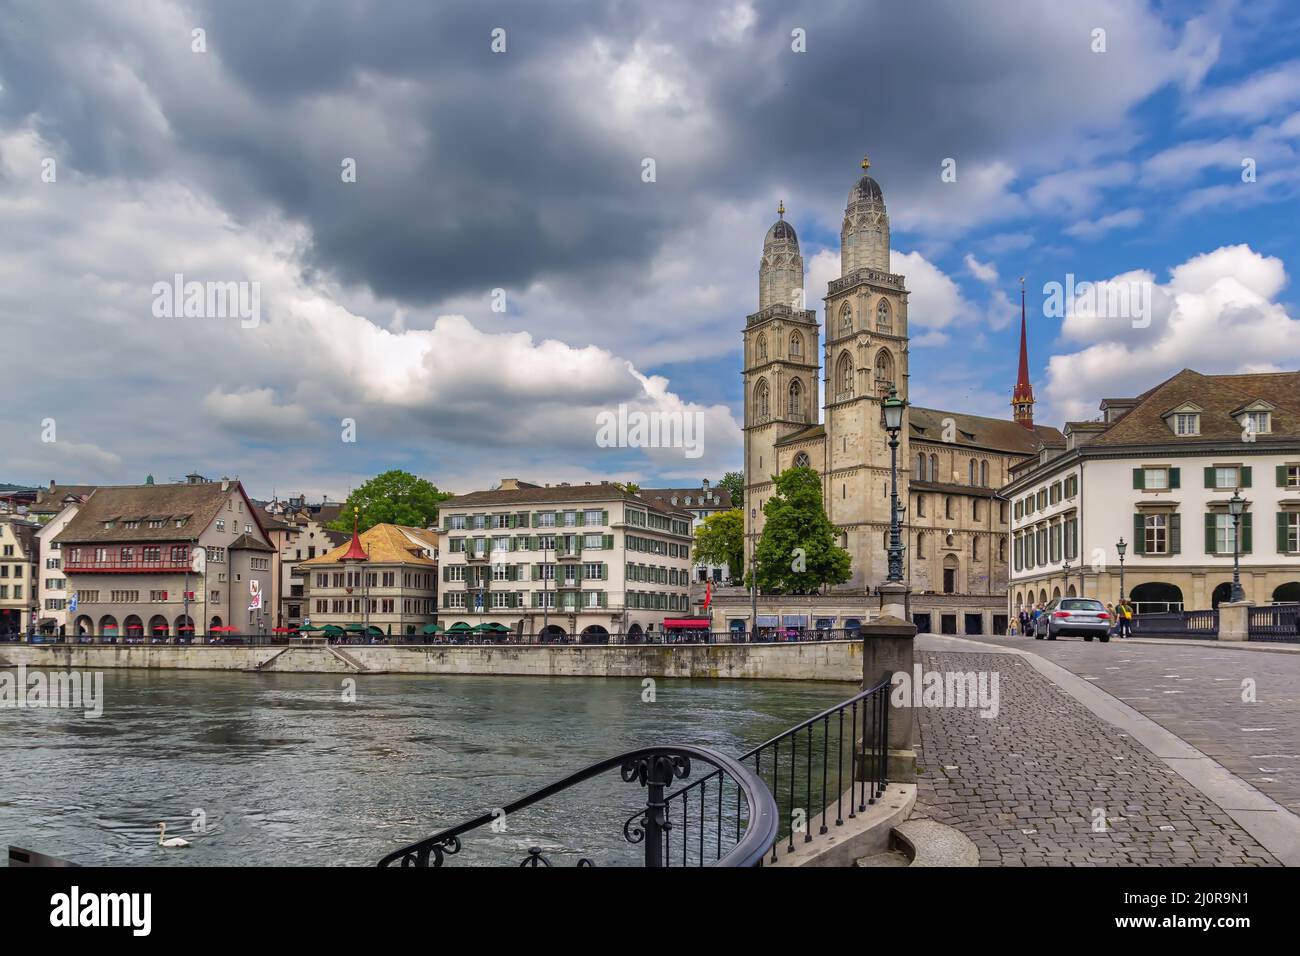 Grossmunster church, Zurich, Switzerland Stock Photo